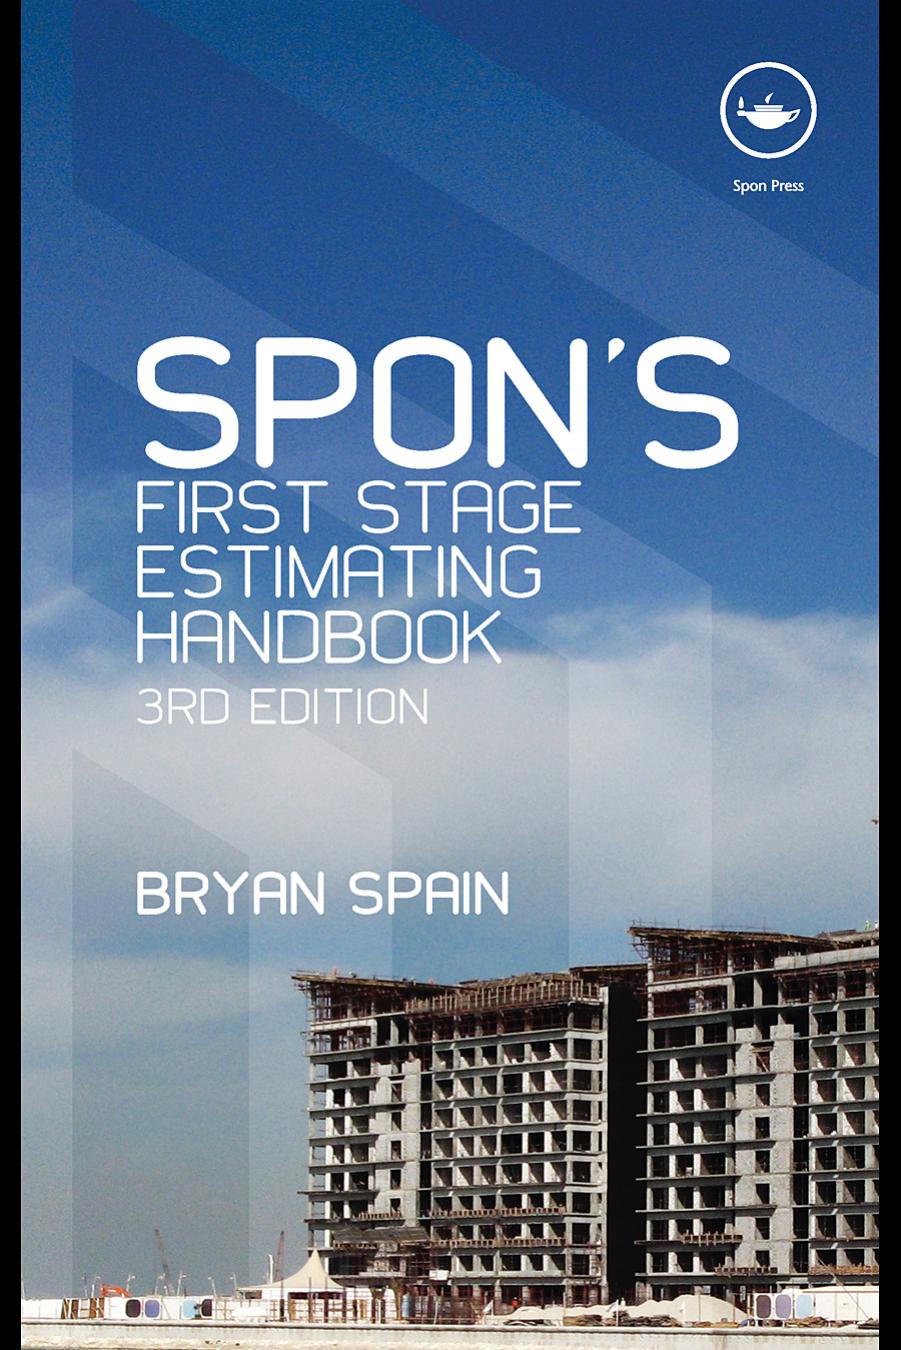 Spon’s First Stage Estimating Handbook, Third Edition